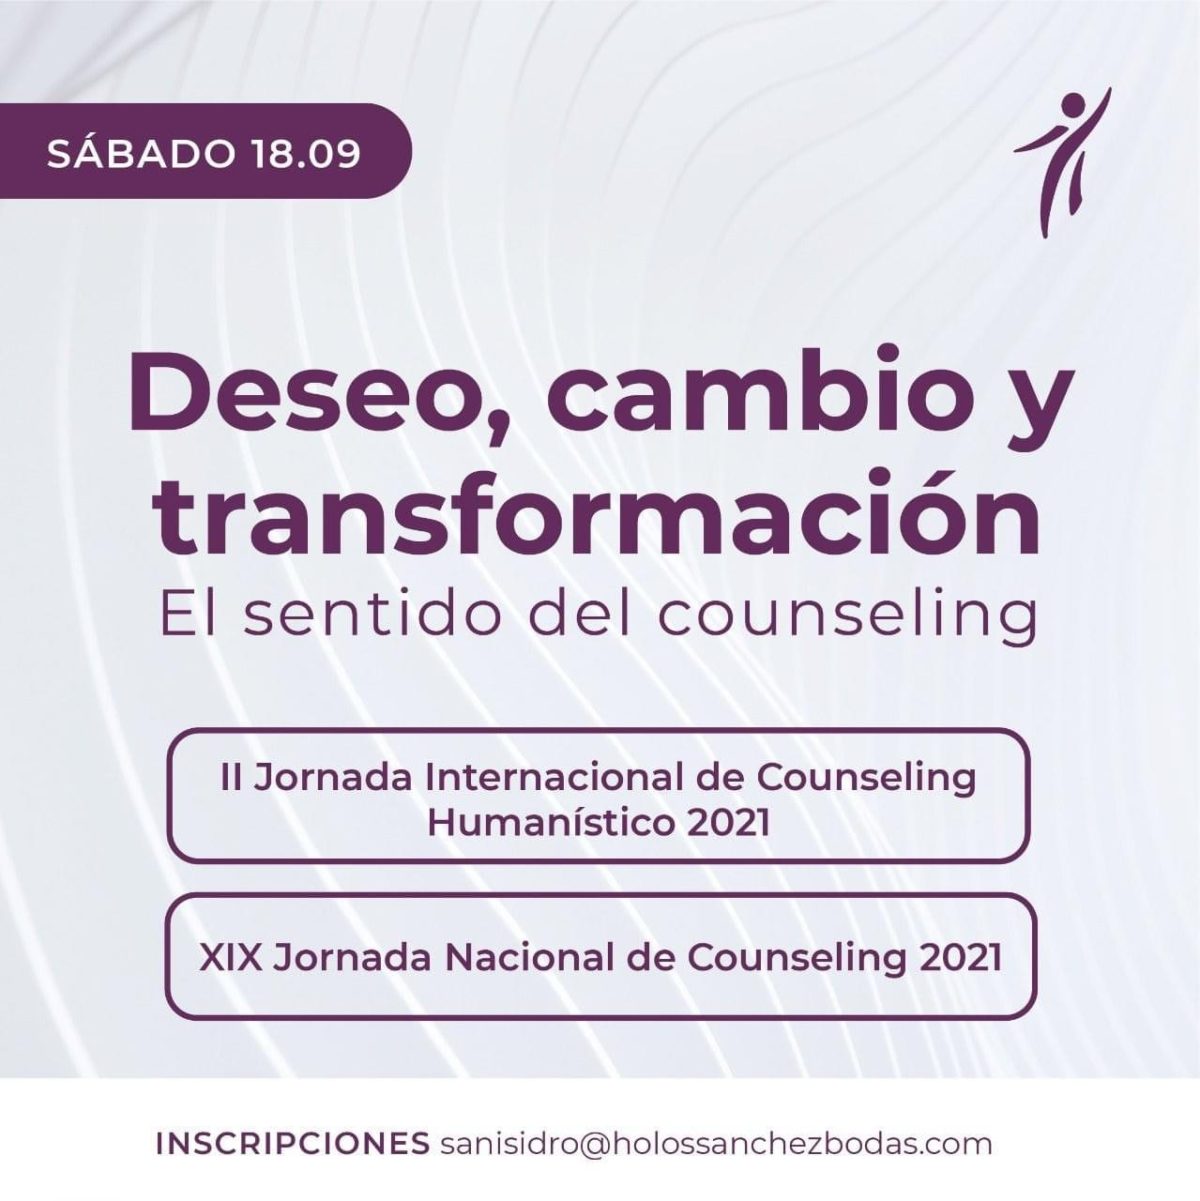 Bermejo en las II Jornadas Internacionales y XIX Nacionales de Counseling